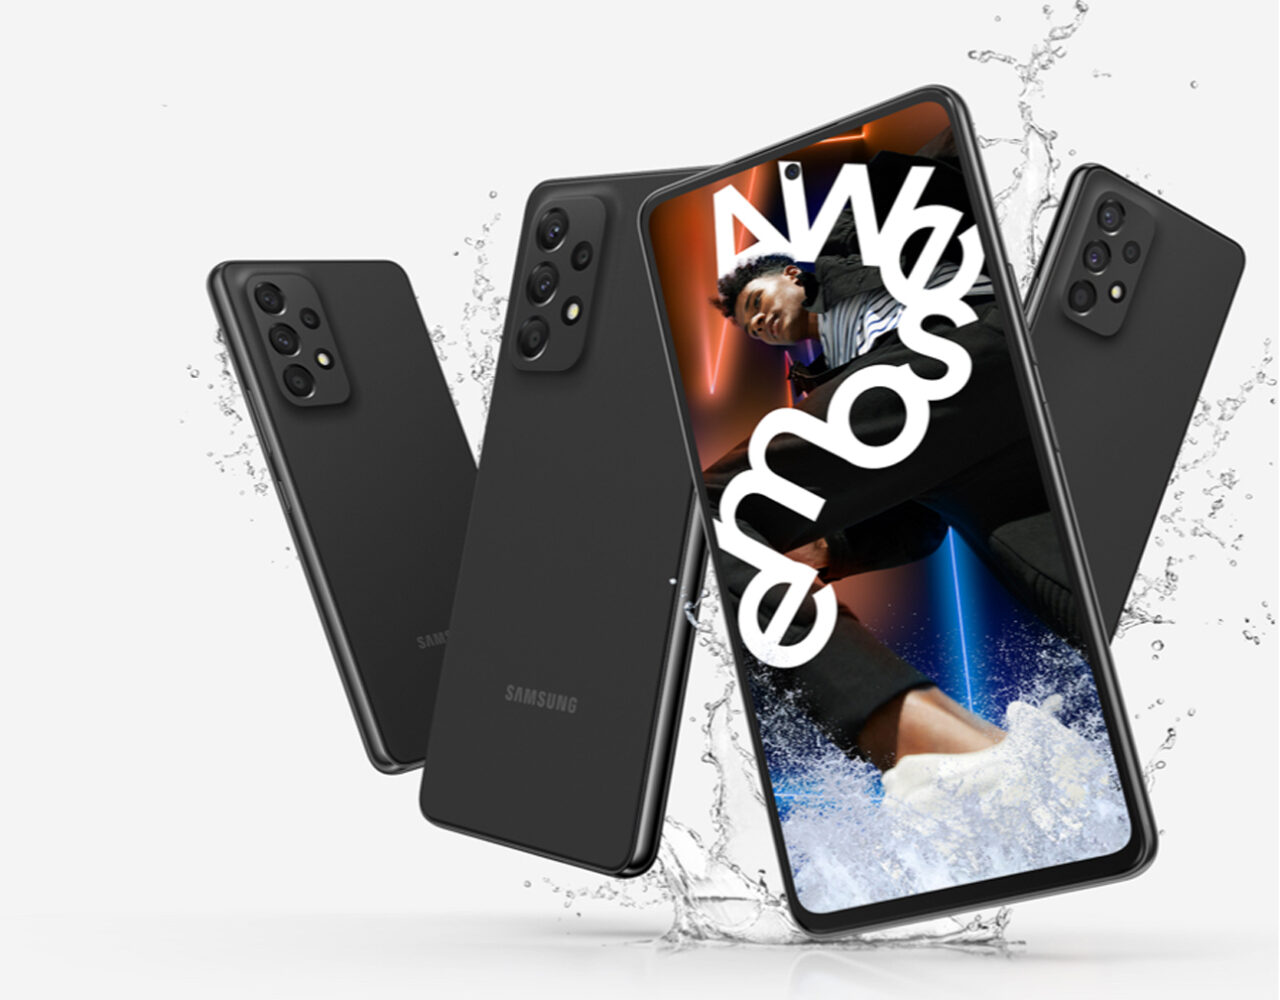 Trzy smartfony Samsung z układem potrójnych aparatów na tle chlapnięć wody, jeden z nich z ekranem wyświetlającym zdjęcie osoby tańczącej z efektem ruchu i napisem "emose".